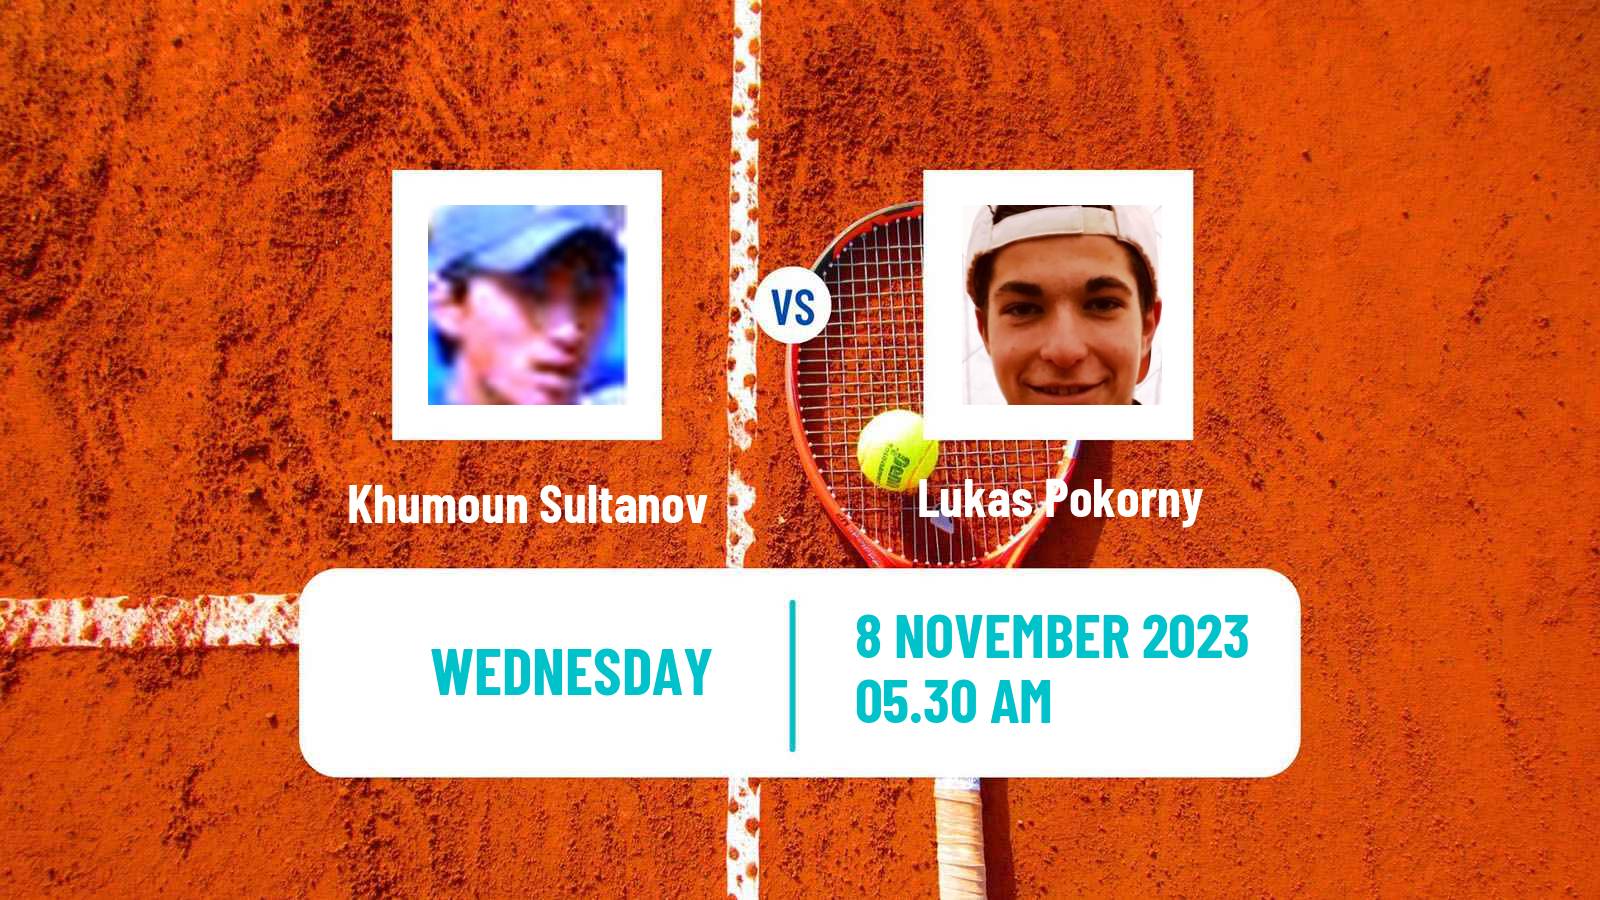 Tennis ITF M25 Trnava 2 Men Khumoun Sultanov - Lukas Pokorny